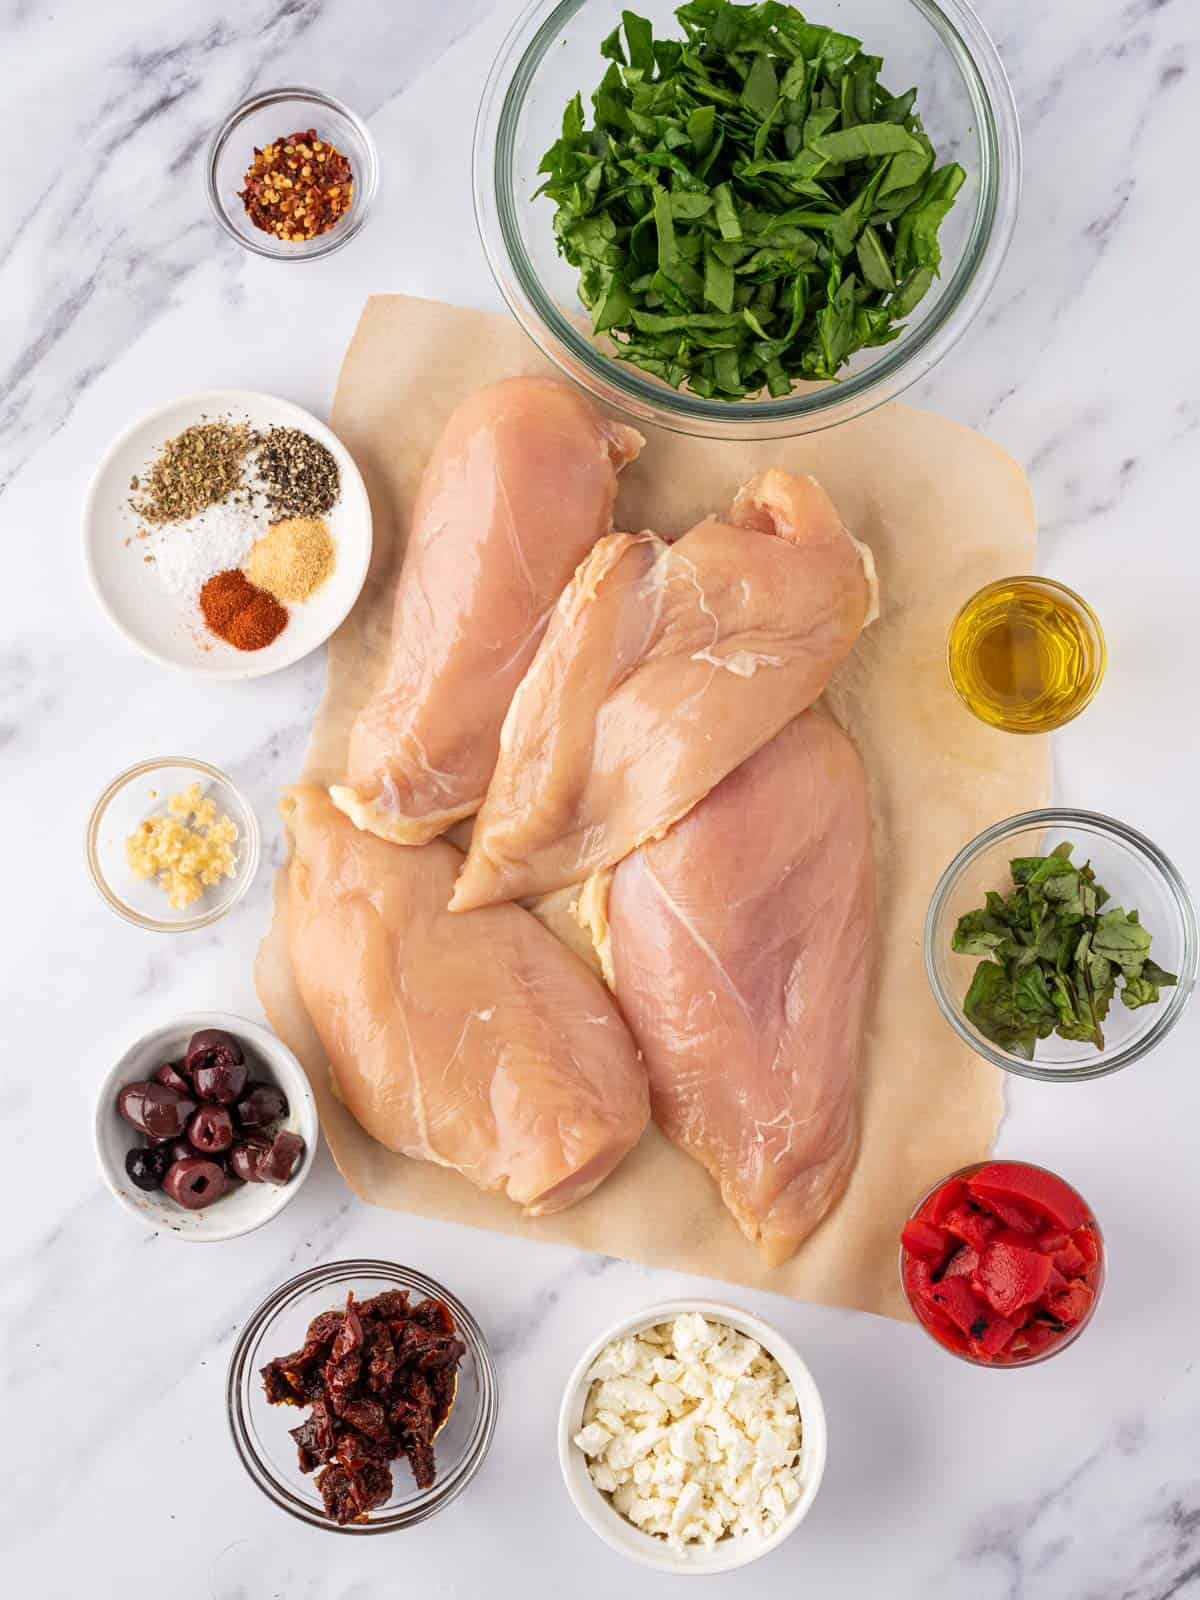 Ingredients needed to make Mediterranean stuffed chicken breasts.